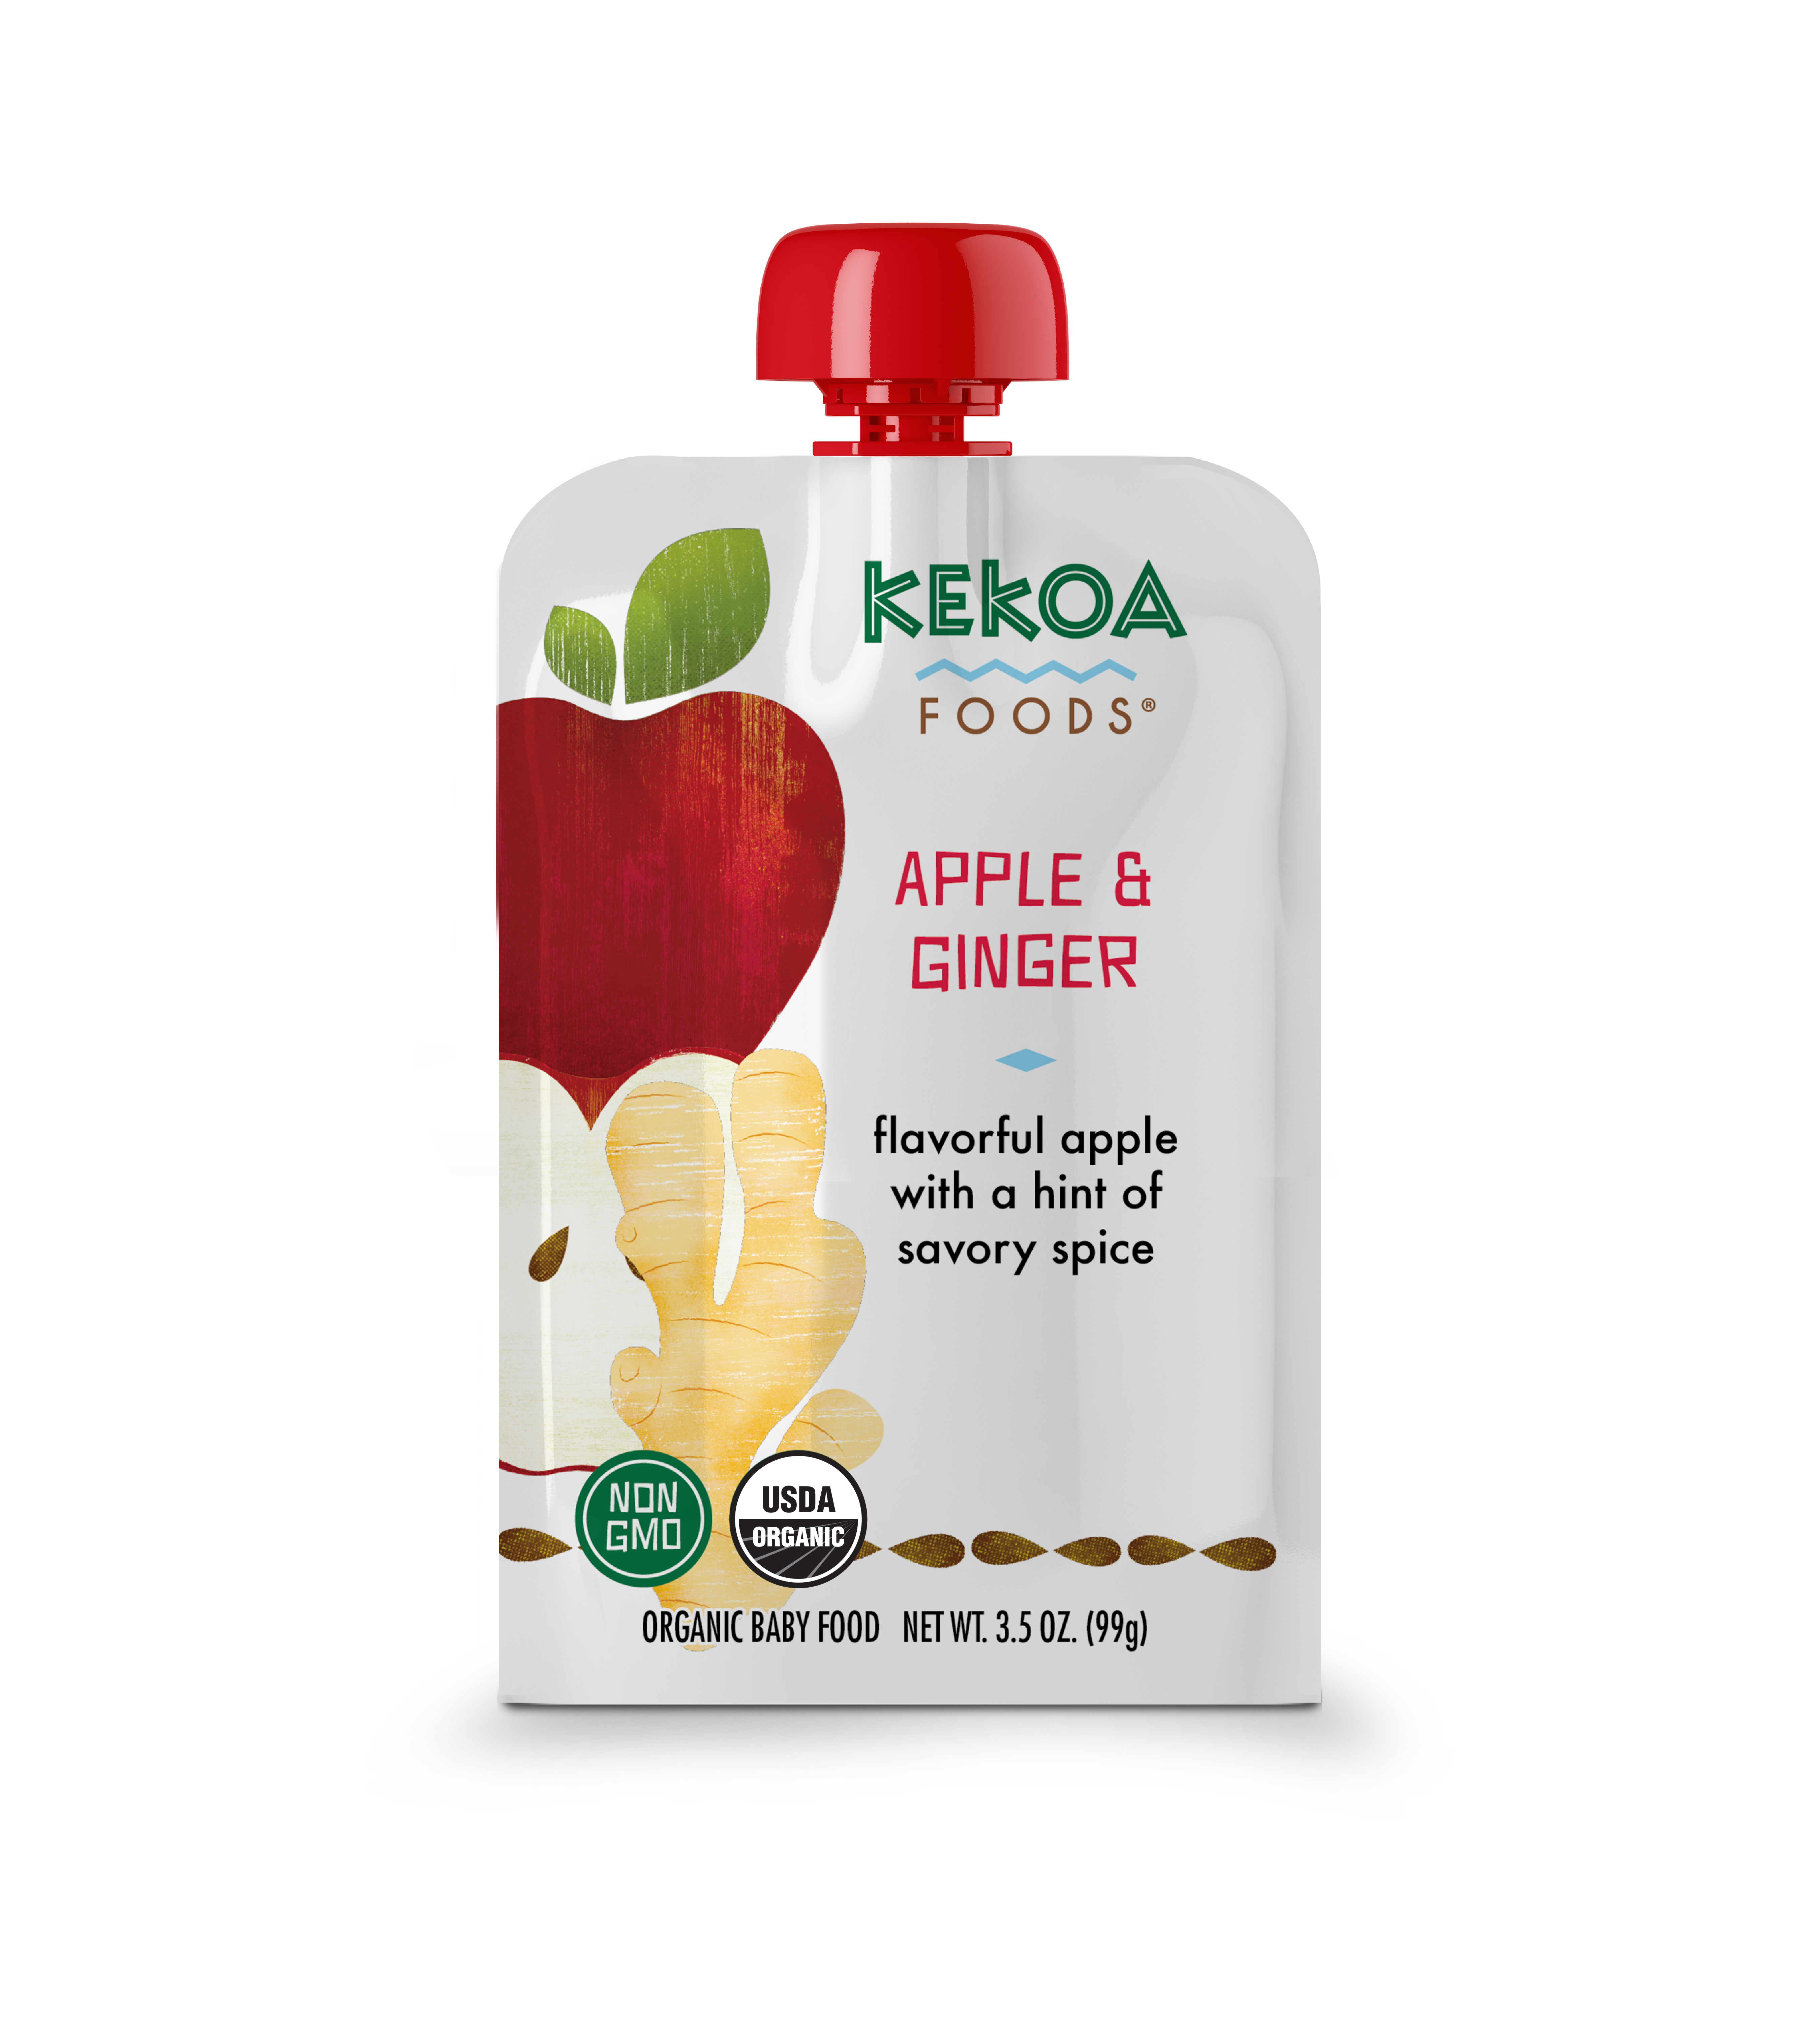 Kekoa Foods - Apple and Ginger 6 innerpacks per case 3.5 oz